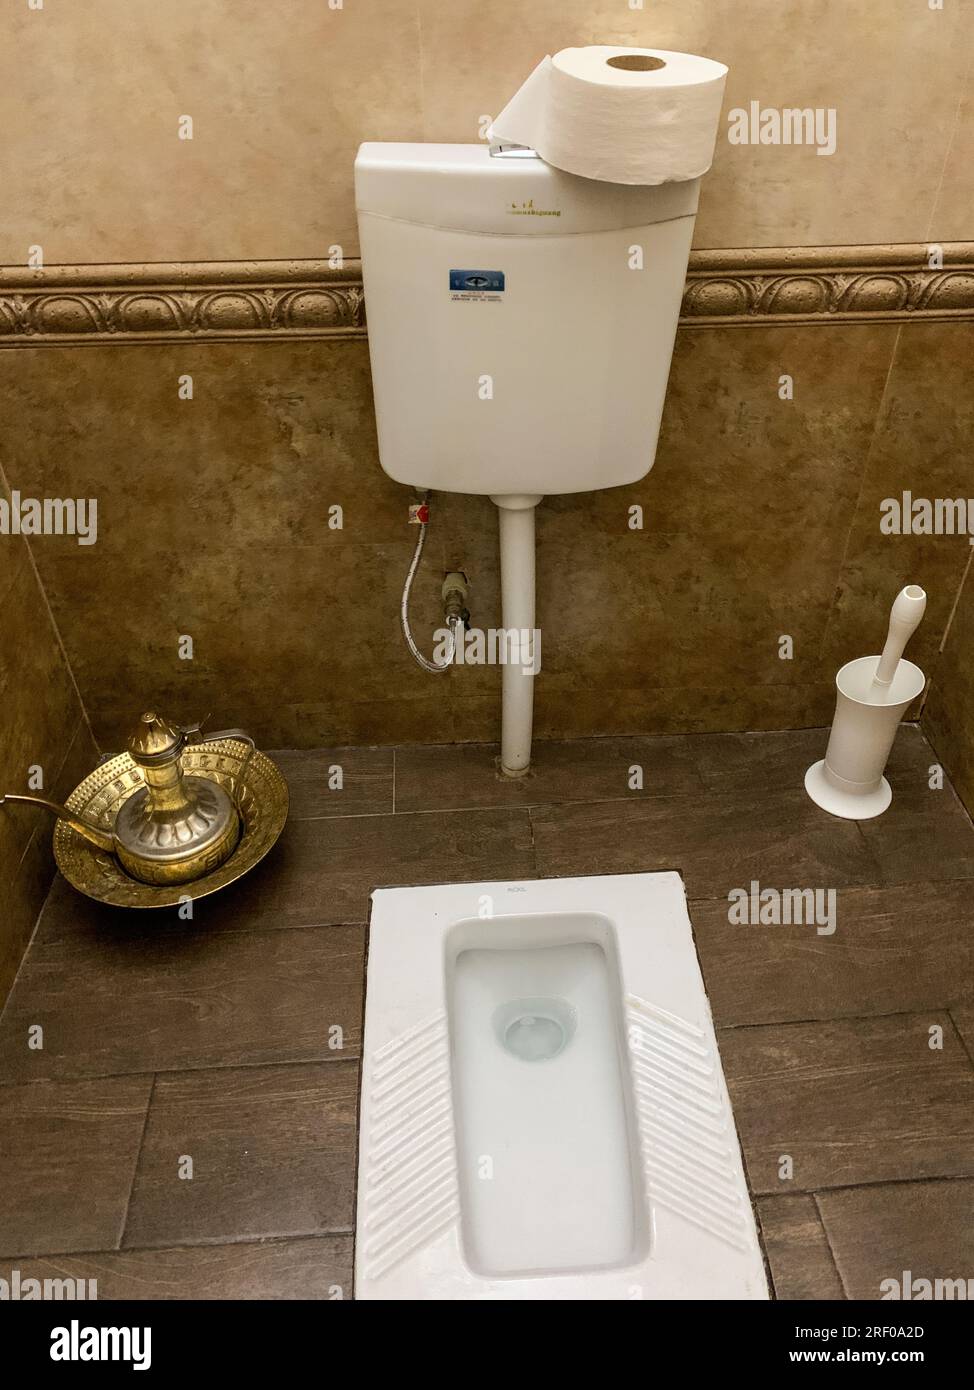 Kazakistan, Almaty. Turco o Squat toliet. Nota: Sistema di lavaggio dell'acqua per coloro che preferiscono lavare piuttosto che strofinare con carta igienica. Foto Stock